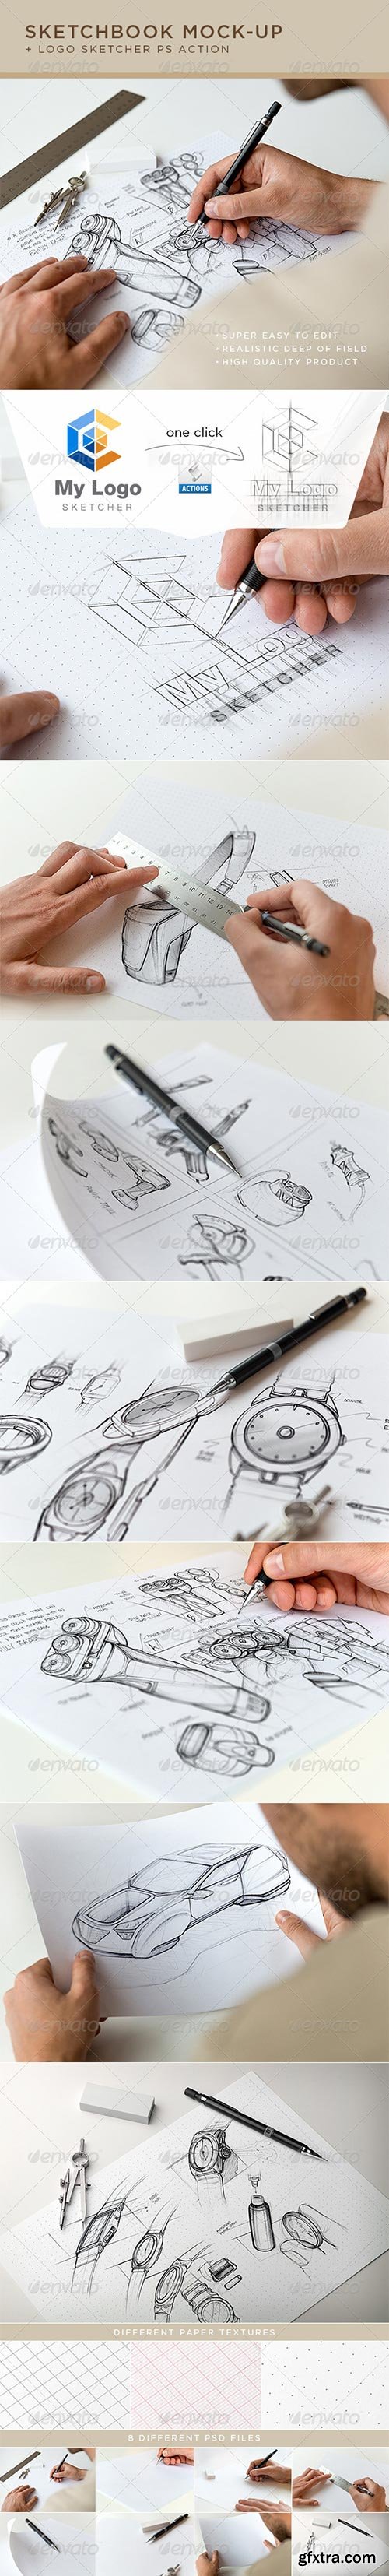 Graphicriver - Sketchbook Mock-Up 7188571